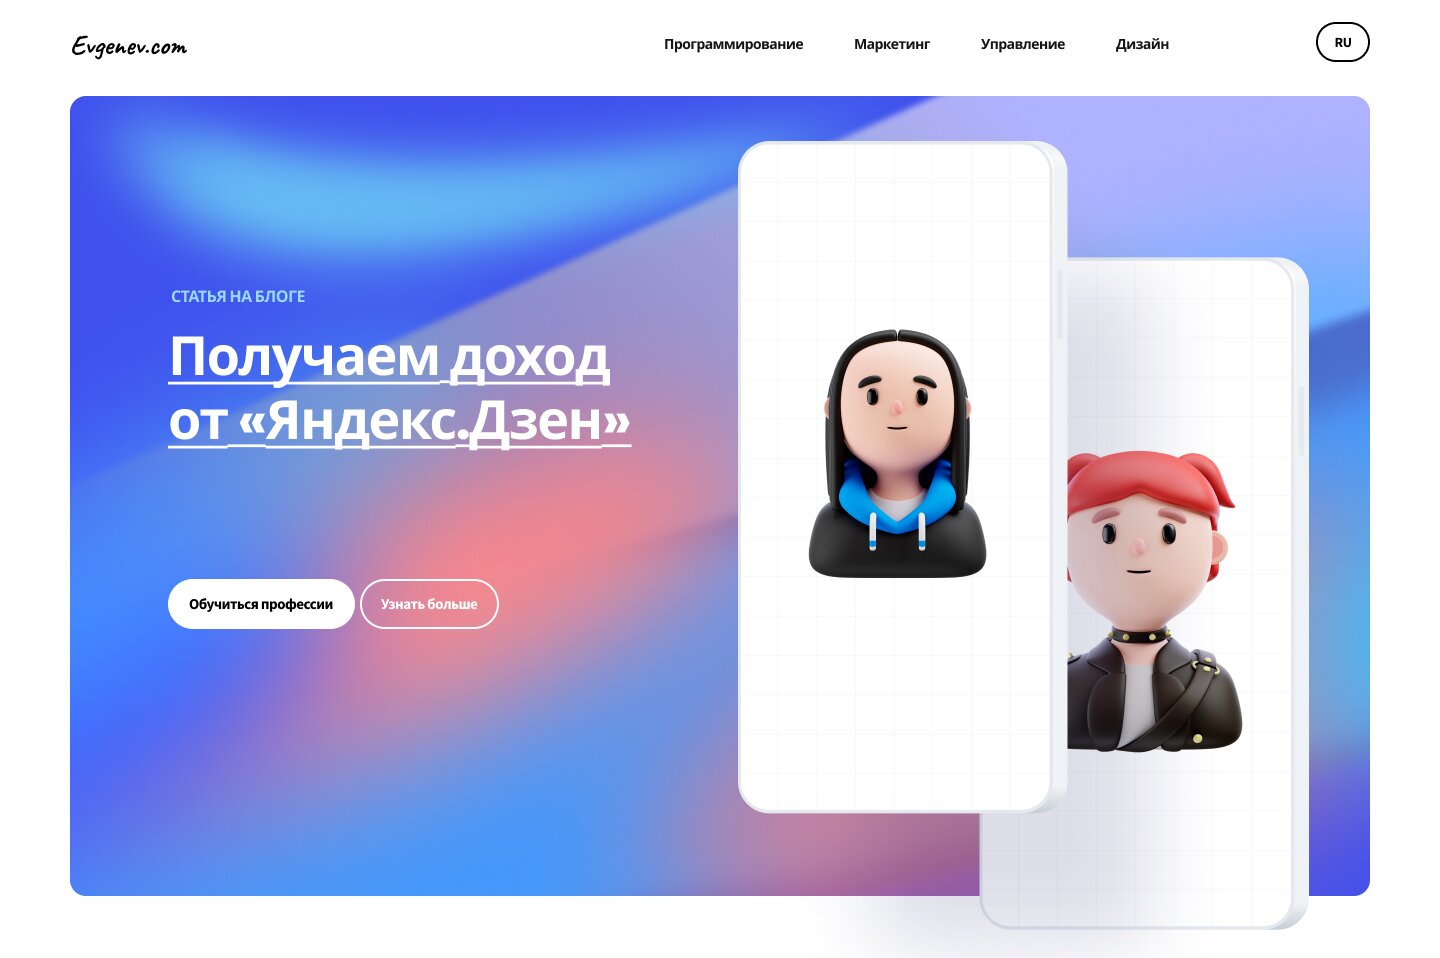 13 Получаем доход от «Яндекс.Дзен»